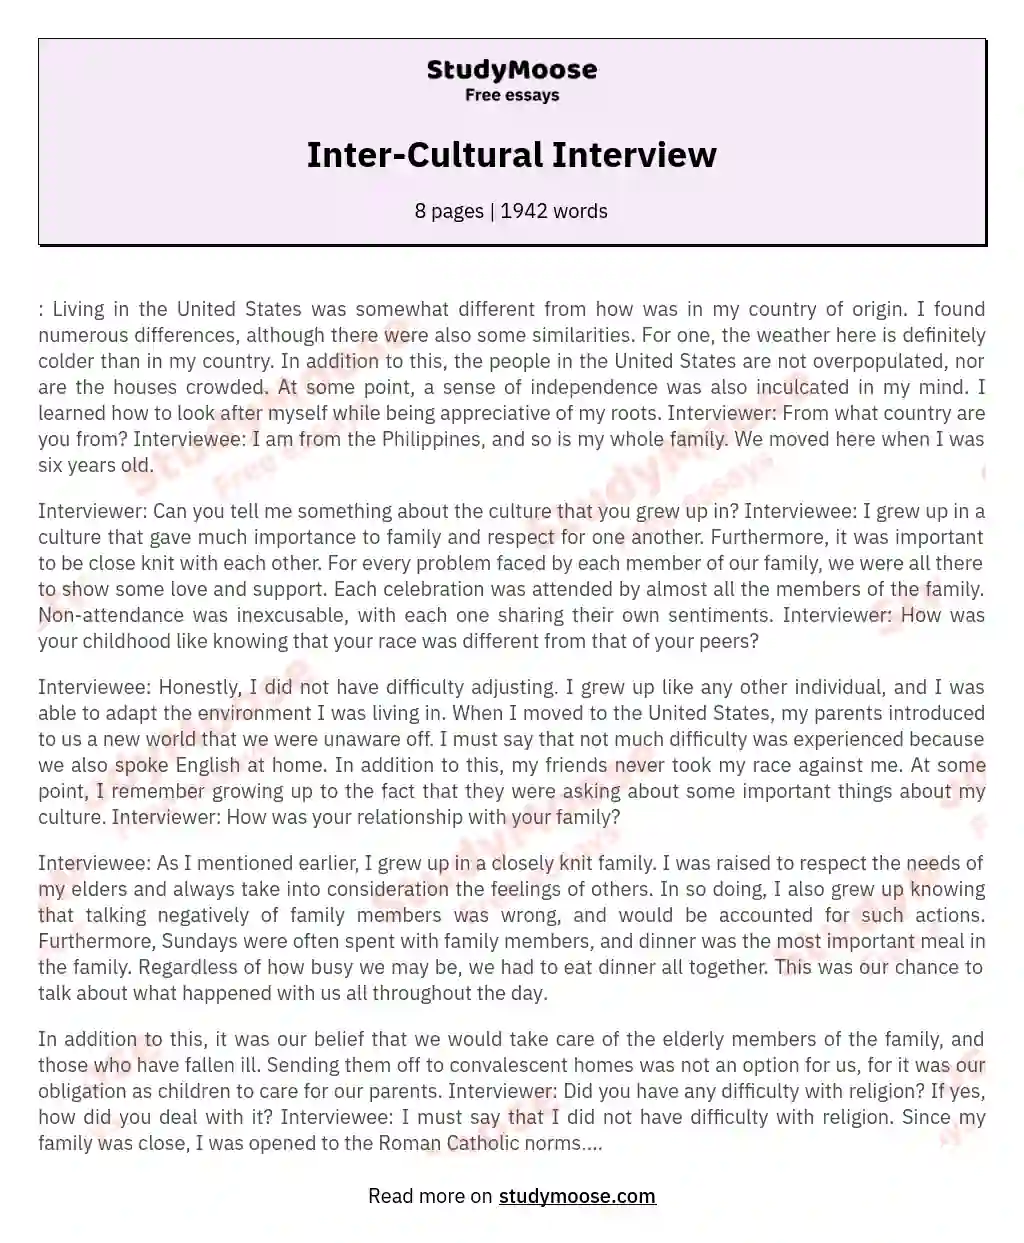 Inter-Cultural Interview essay